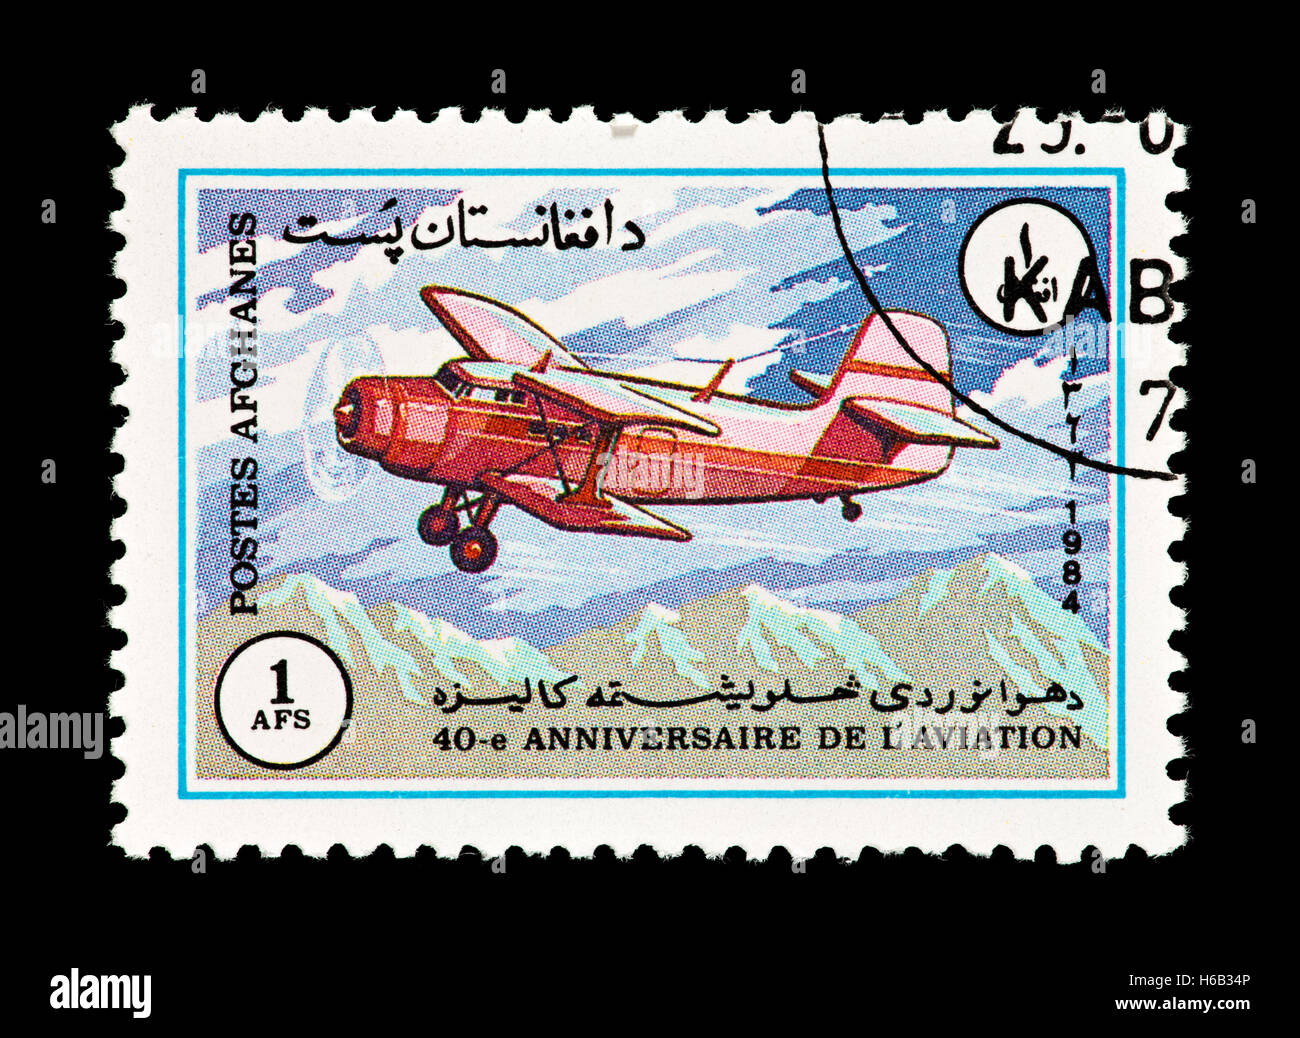 Timbre-poste d'Afghanistan représentant un avion Antonov An-2, 40e anniversaire de l'aviation nationale Banque D'Images